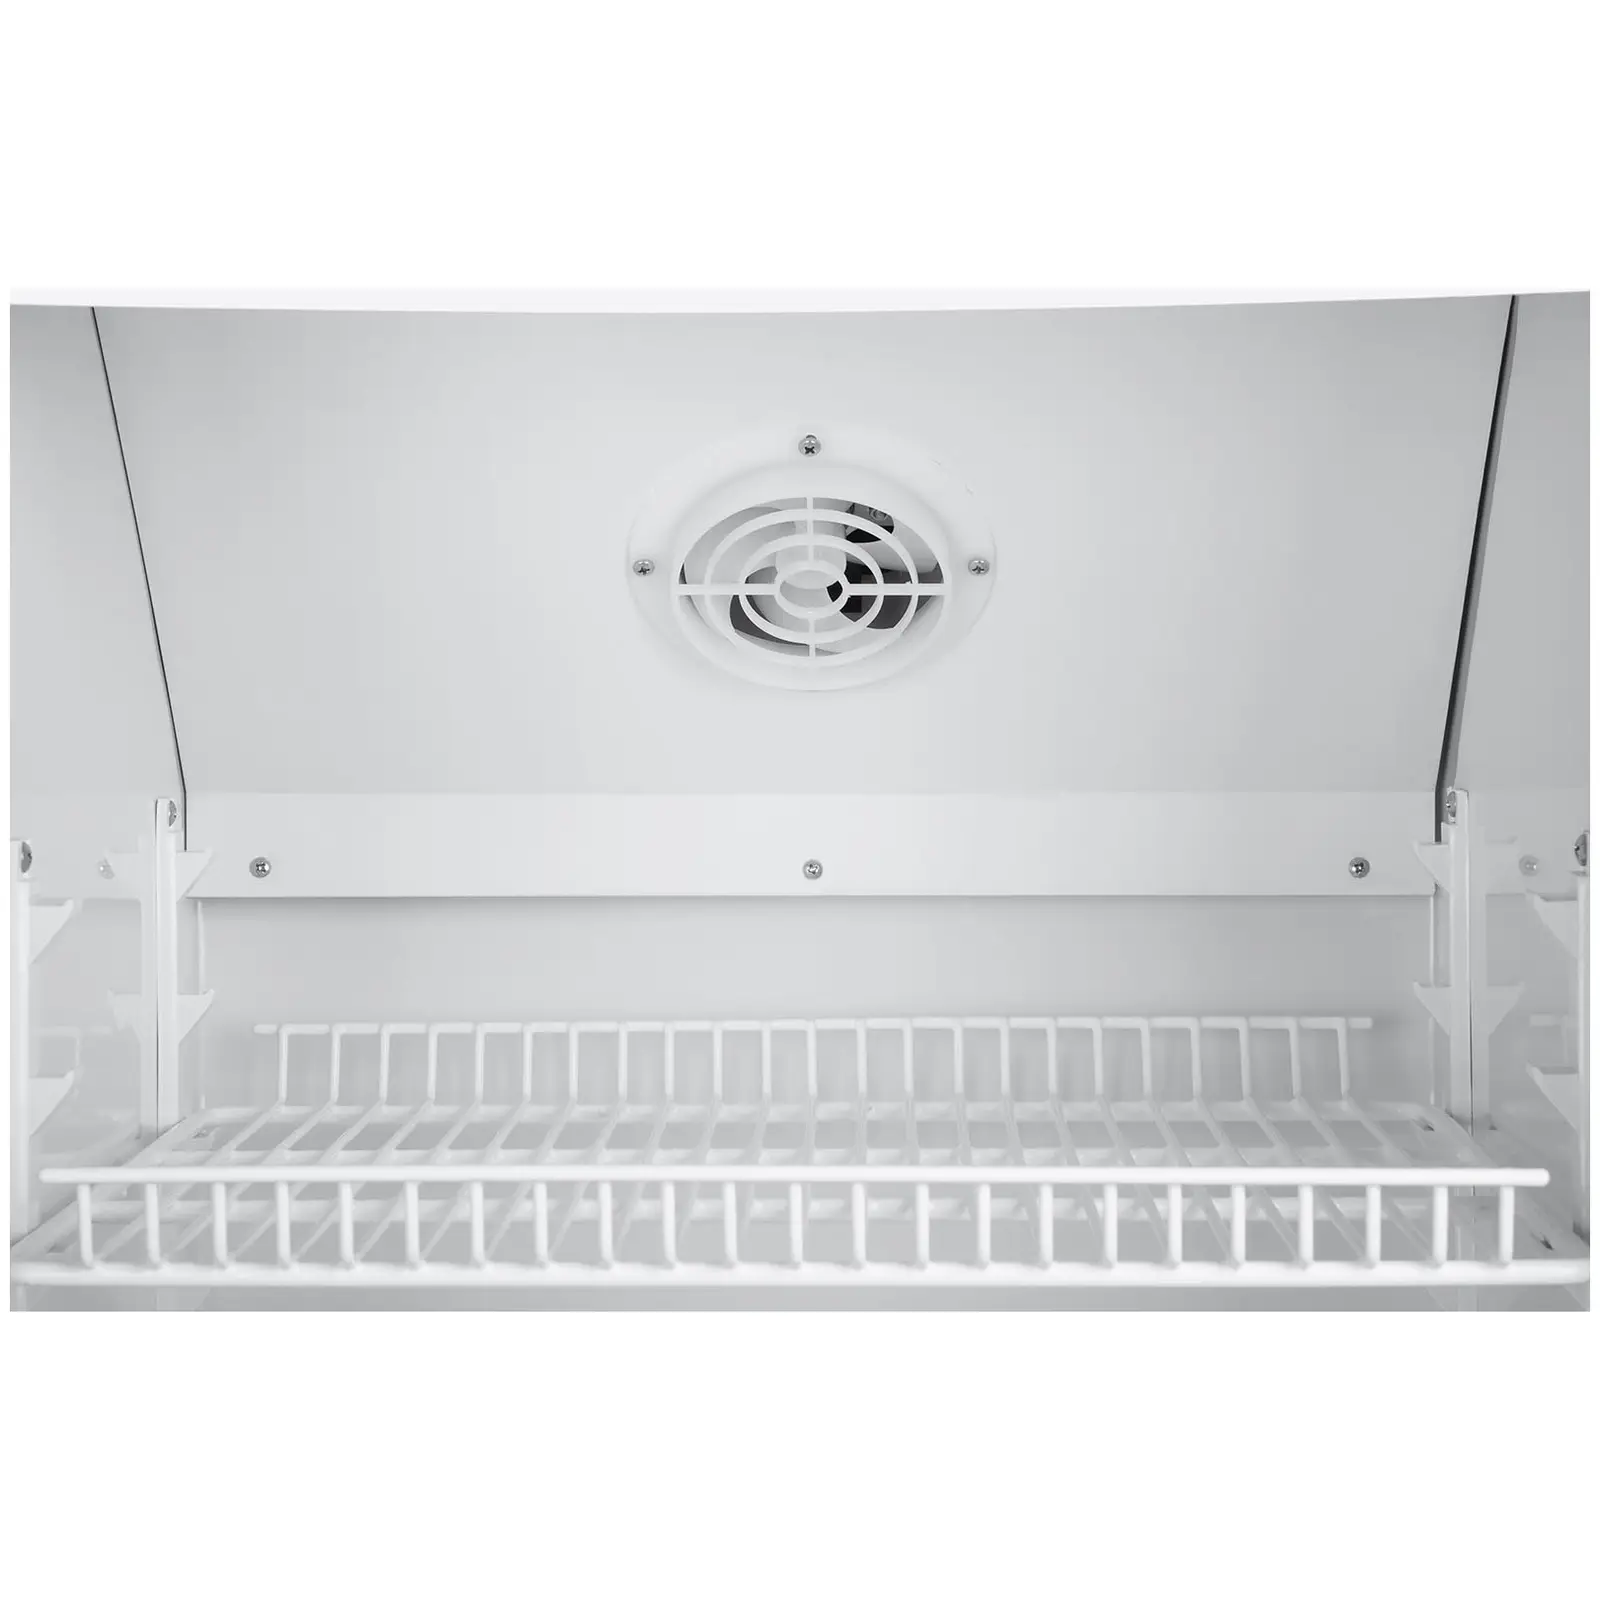 Arca refrigeradora - 238 l